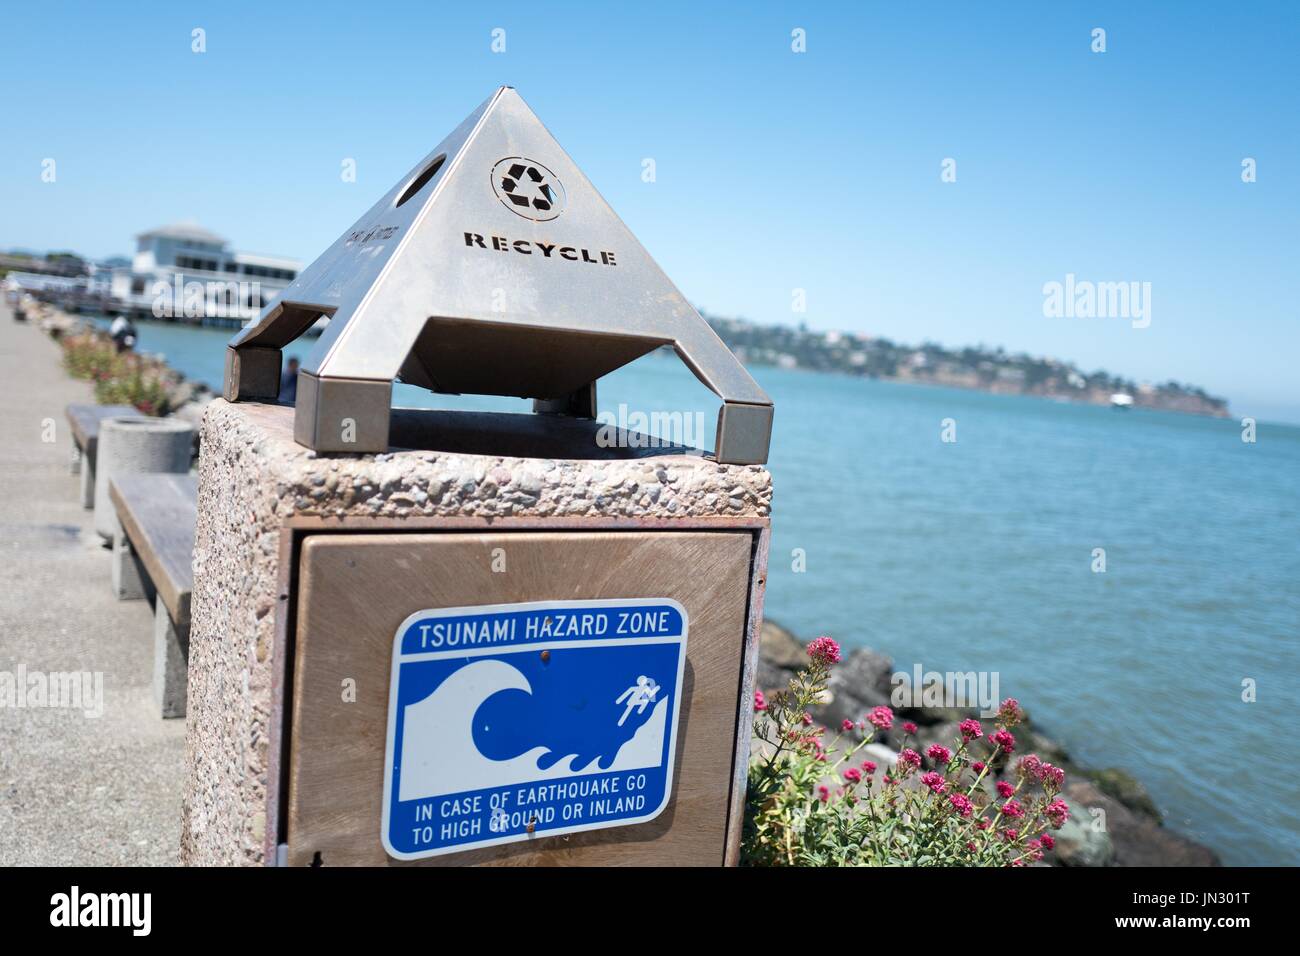 Los carteles en el lateral de una papelera en la zona de riesgo de tsunami lee Bridgeway Road, en el área de la Bahía de San Francisco, la ciudad de Sausalito, California, 29 de junio de 2017. Los tsunamis son una amenaza para la actividad sísmica en el área de la bahía. Foto de stock